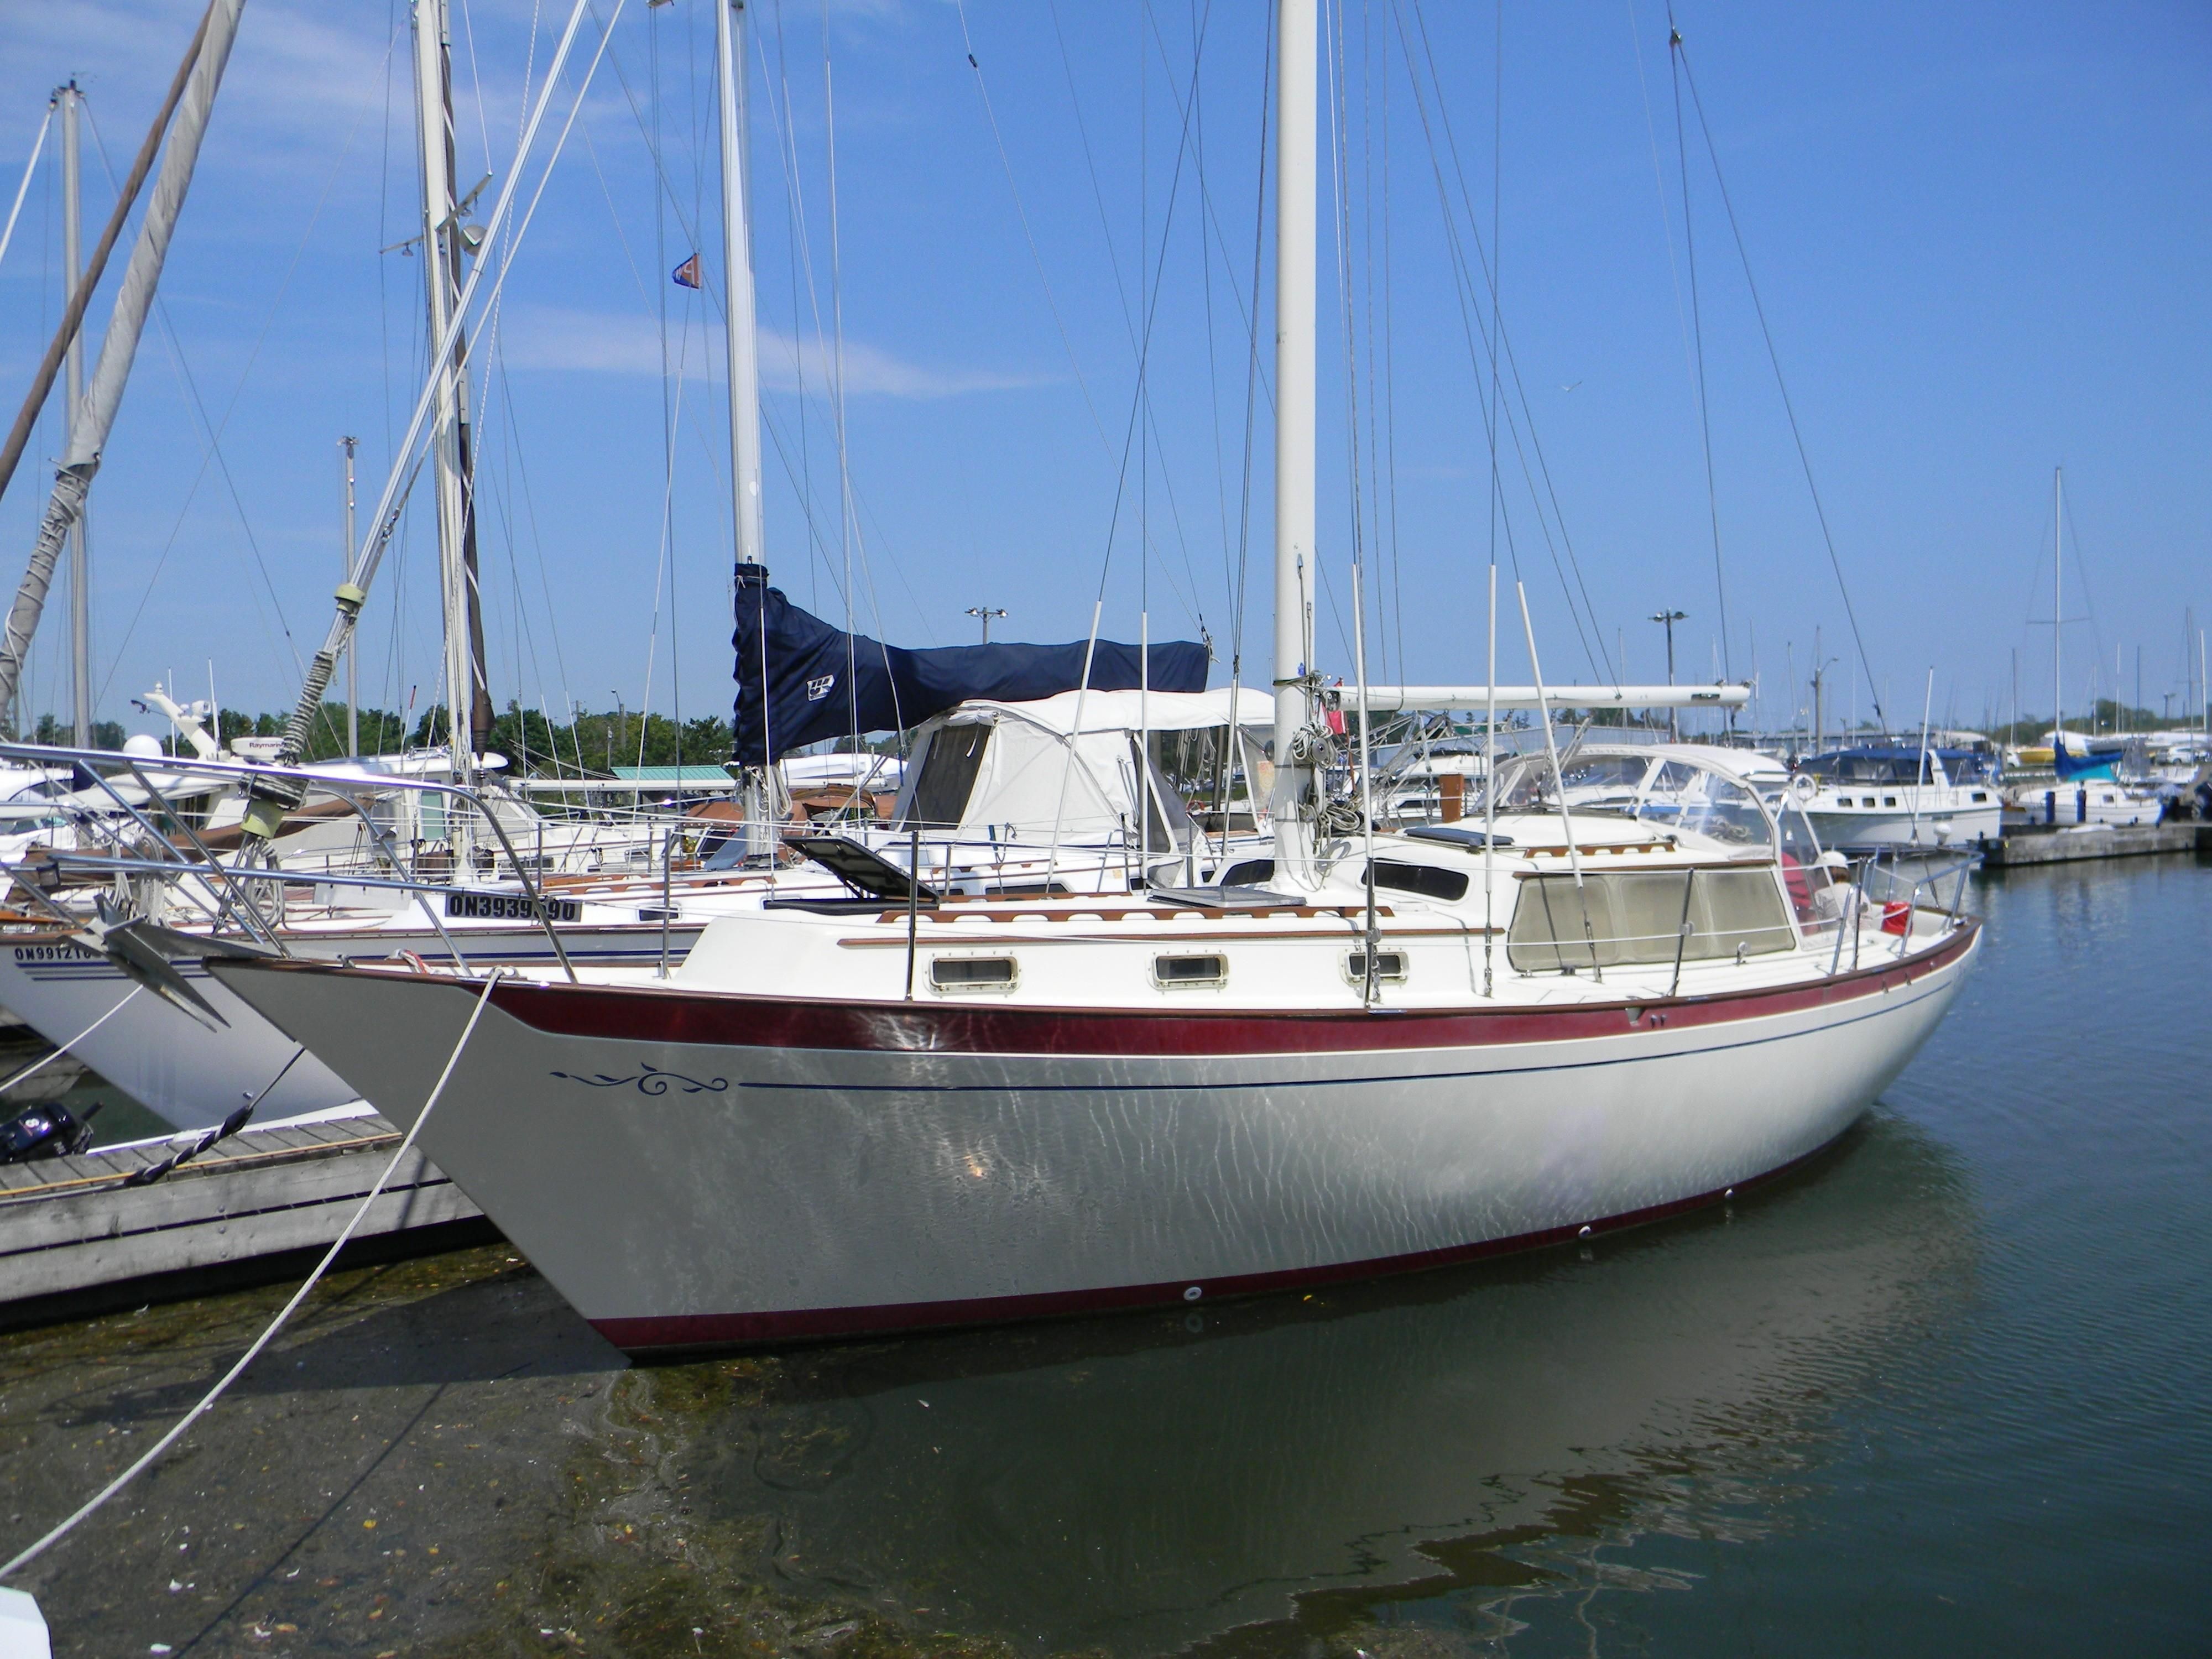 36 islander sailboat for sale